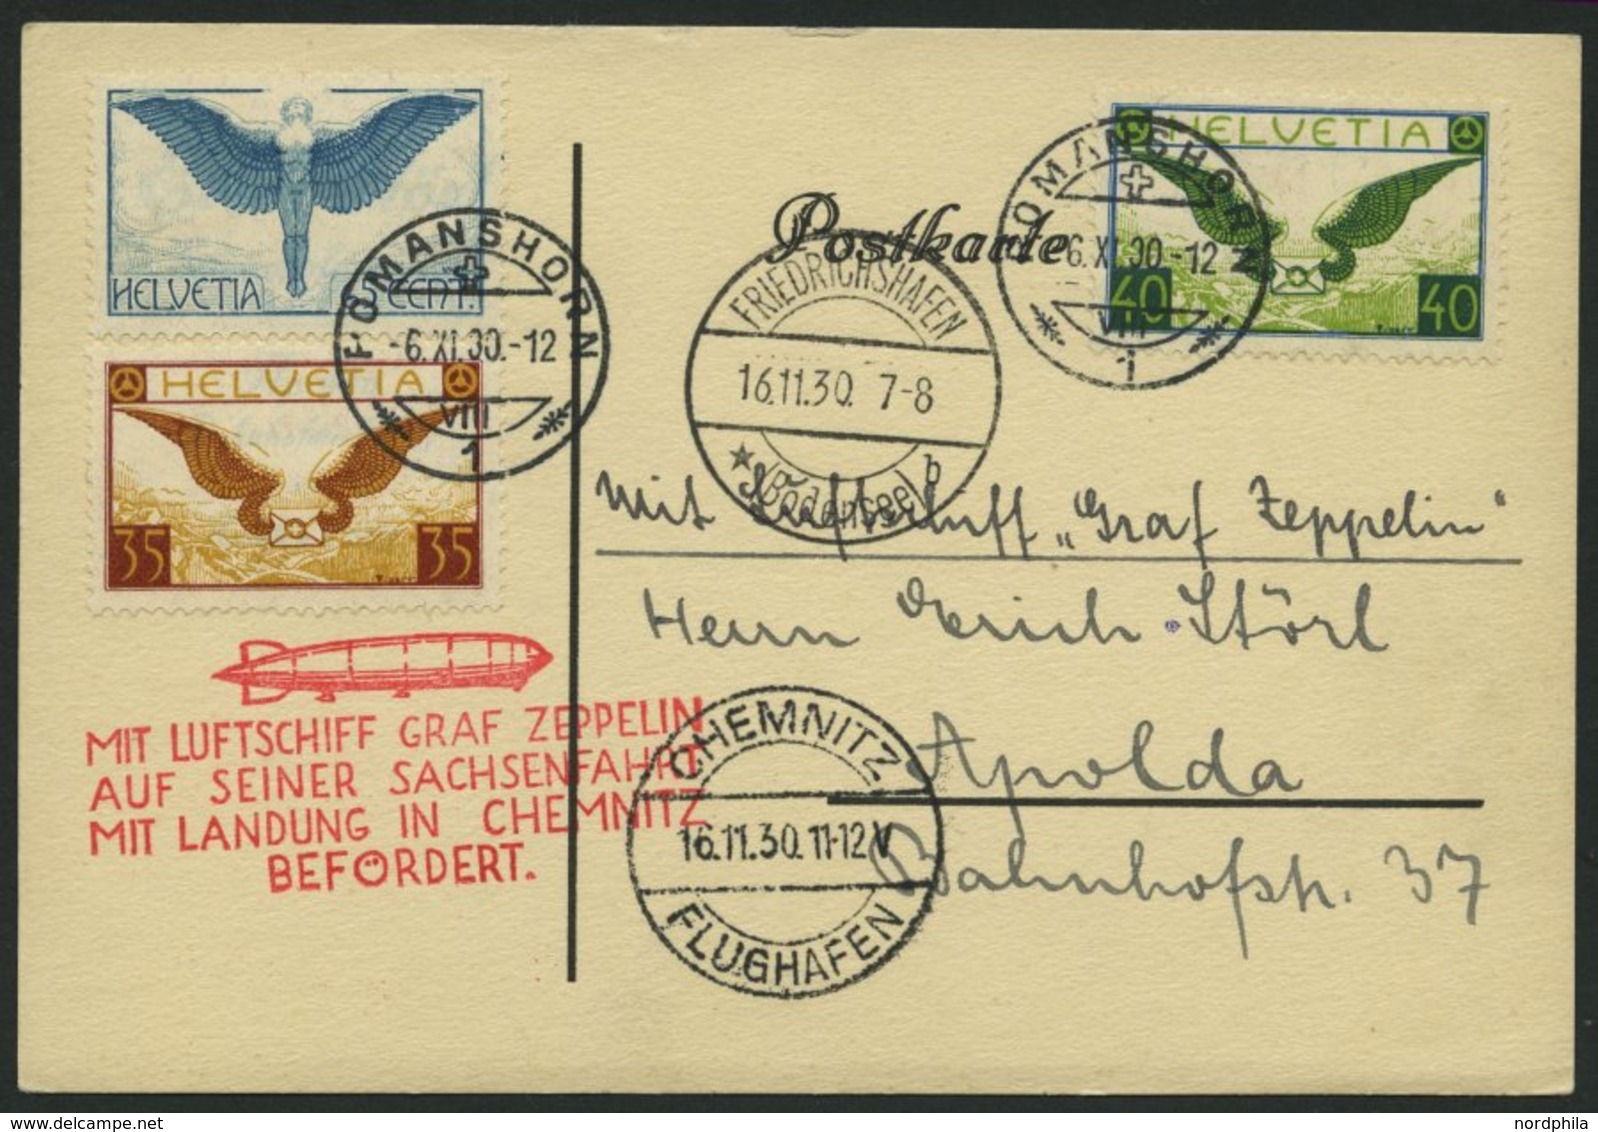 ZULEITUNGSPOST 100 BRIEF, Schweiz: 1930, Fahrt Nach Chemnitz, Prachtkarte - Zeppelin